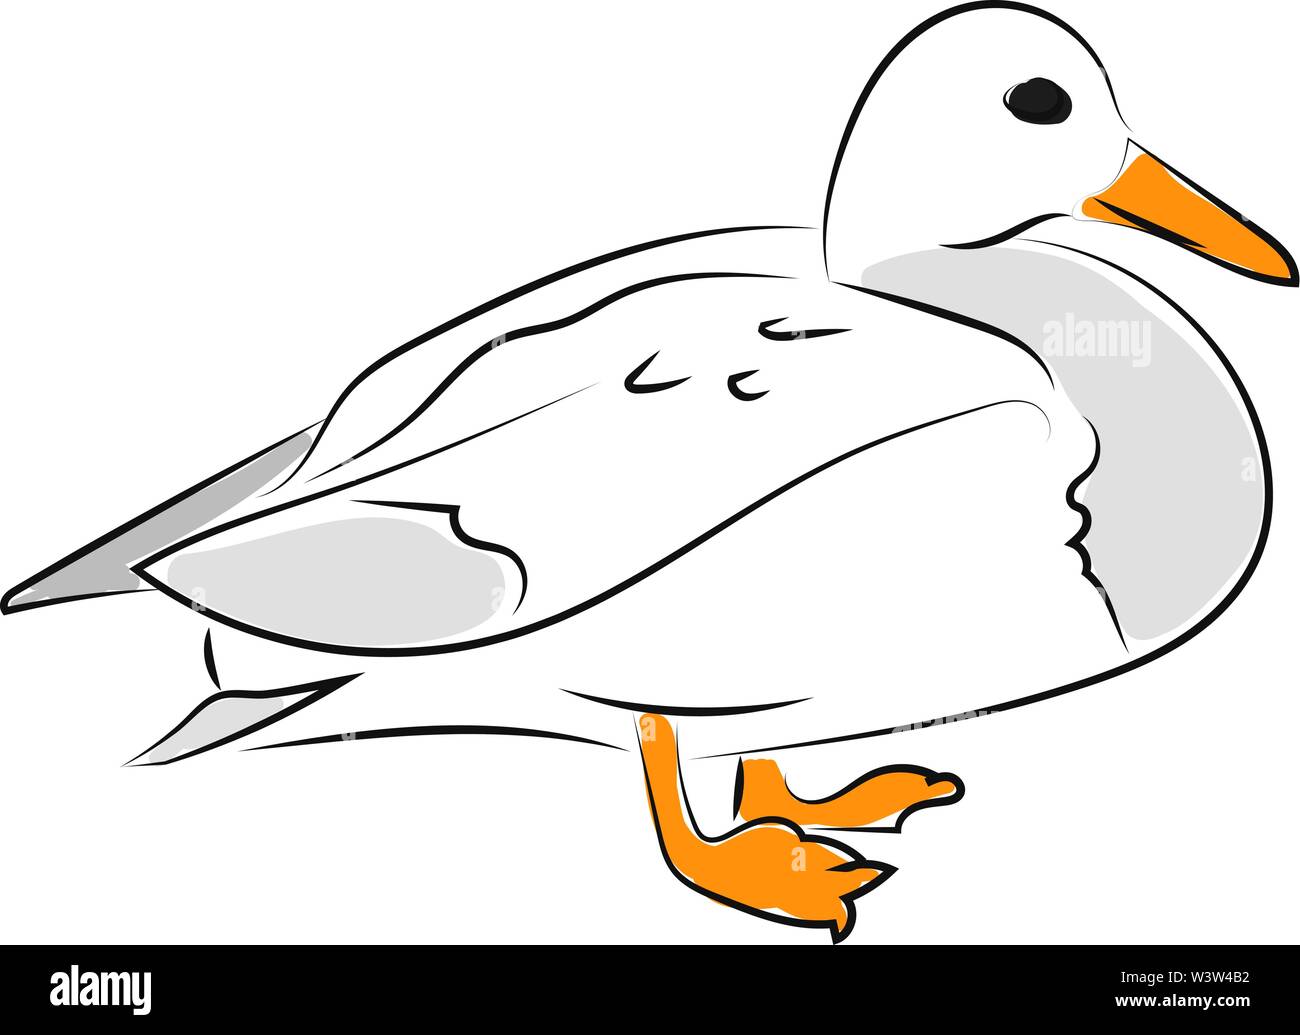 White duck, illustration, vector on white background. Stock Vector